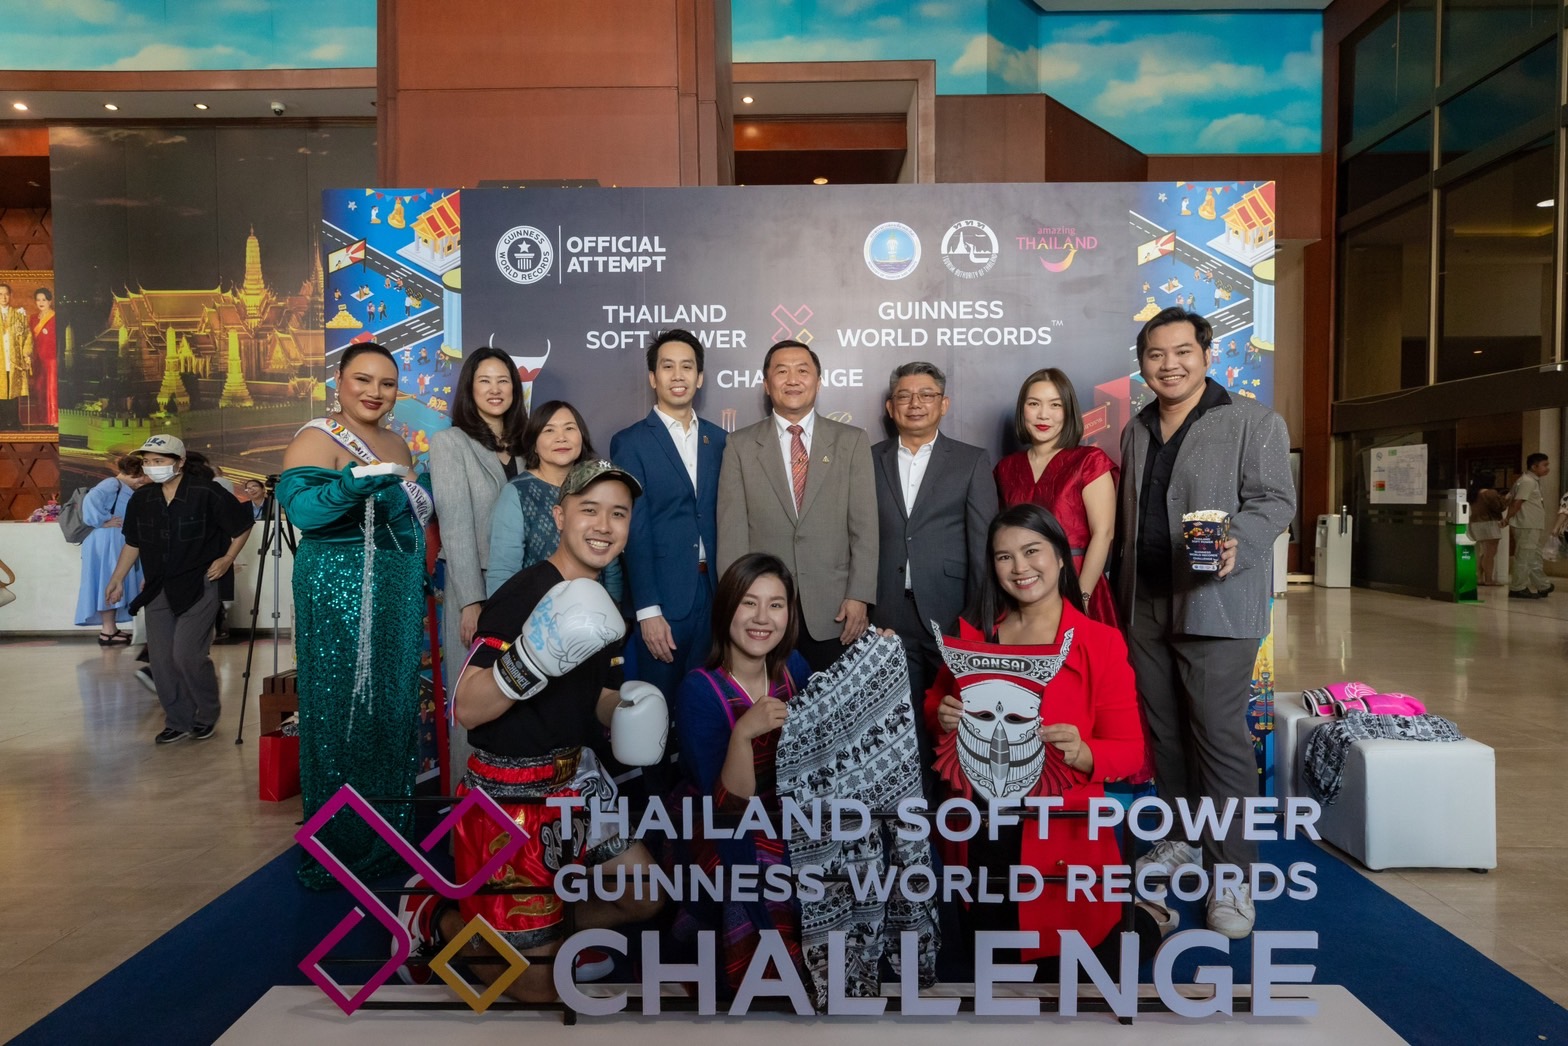 ททท. ผลักดัน Soft Power ไทย ด้วยโครงการ THAILAND SOFT POWER X GUINNESS WORLD RECORDS™ CHALLENGE ค้นหาสุดยอดผู้เข้าแข่งขัน 5 คนจาก 5 หมวดการแข่งขันที่สุดของโลก